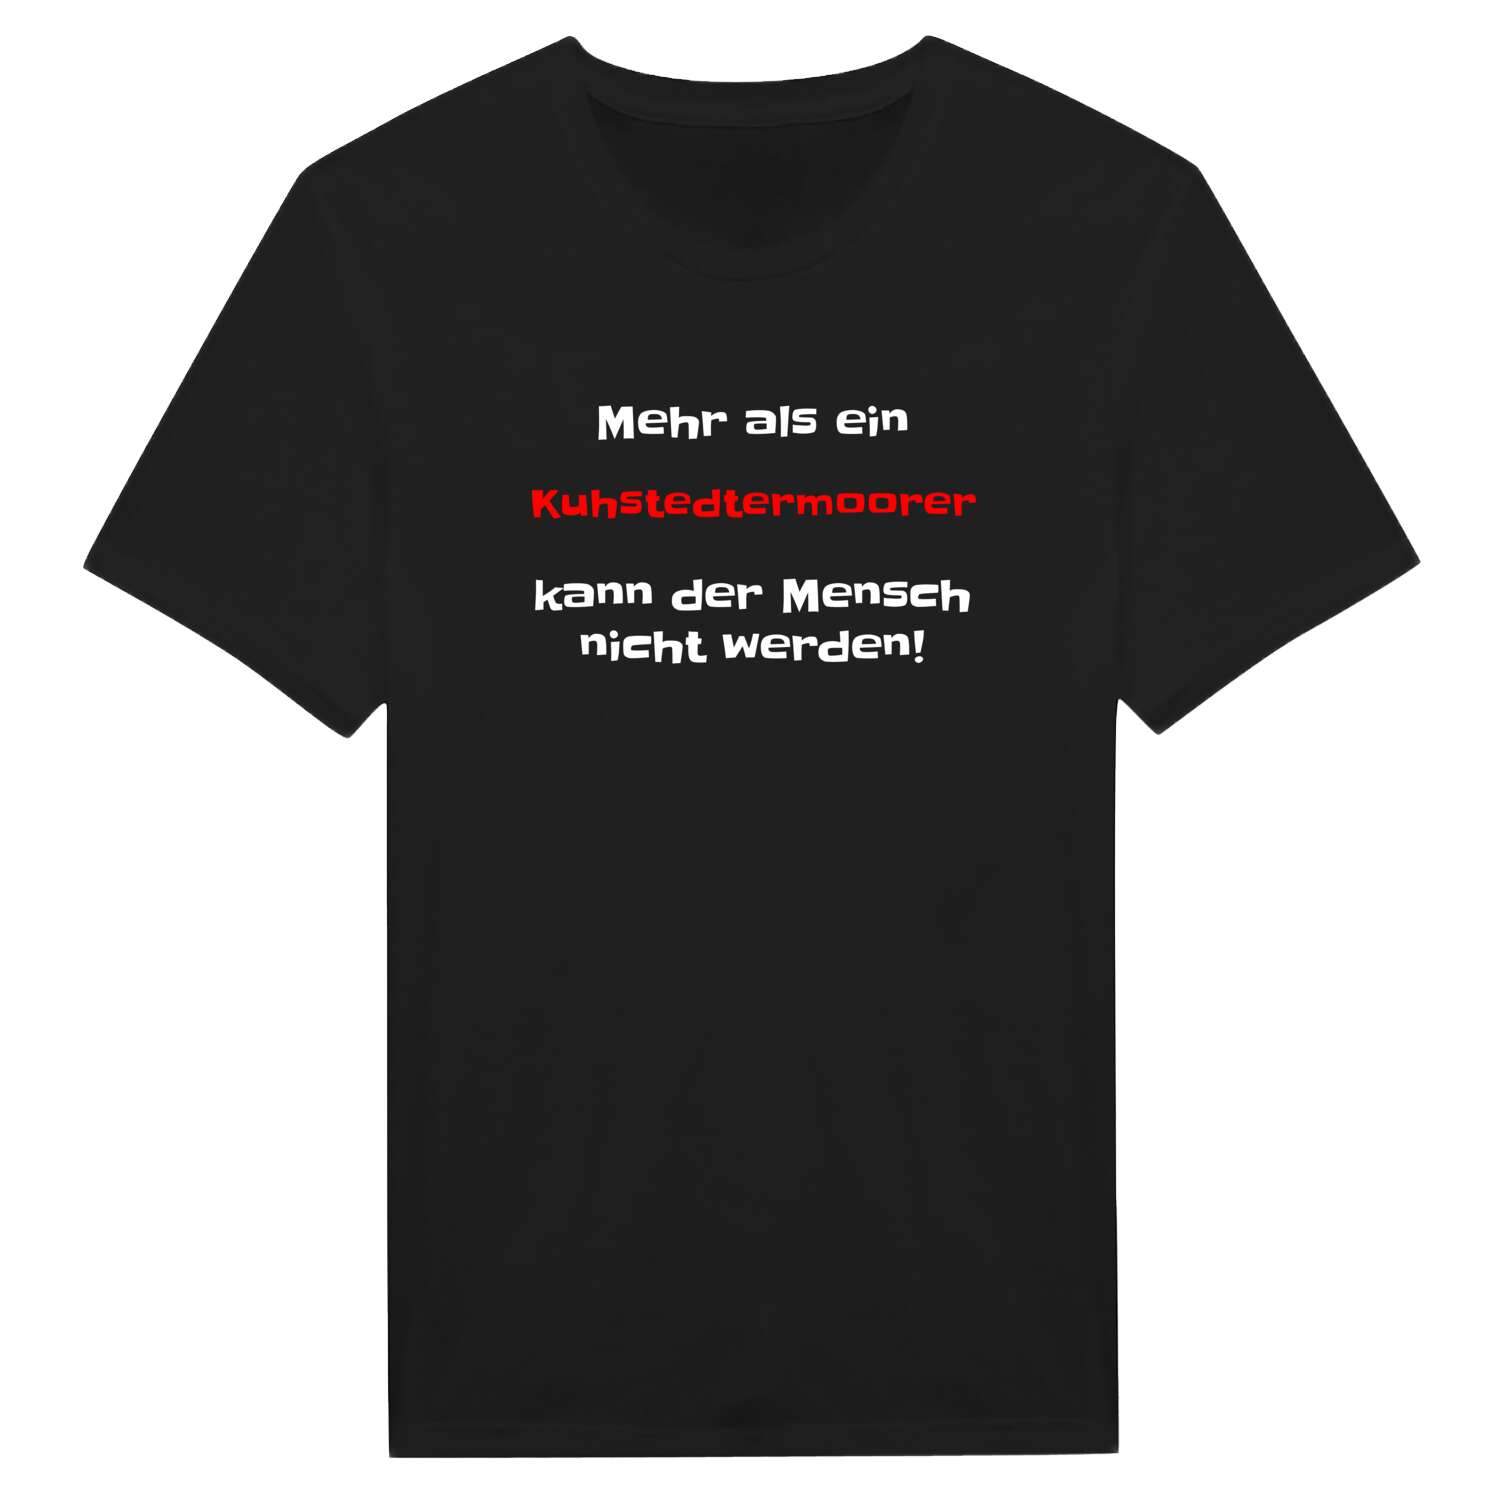 Kuhstedtermoor T-Shirt »Mehr als ein«